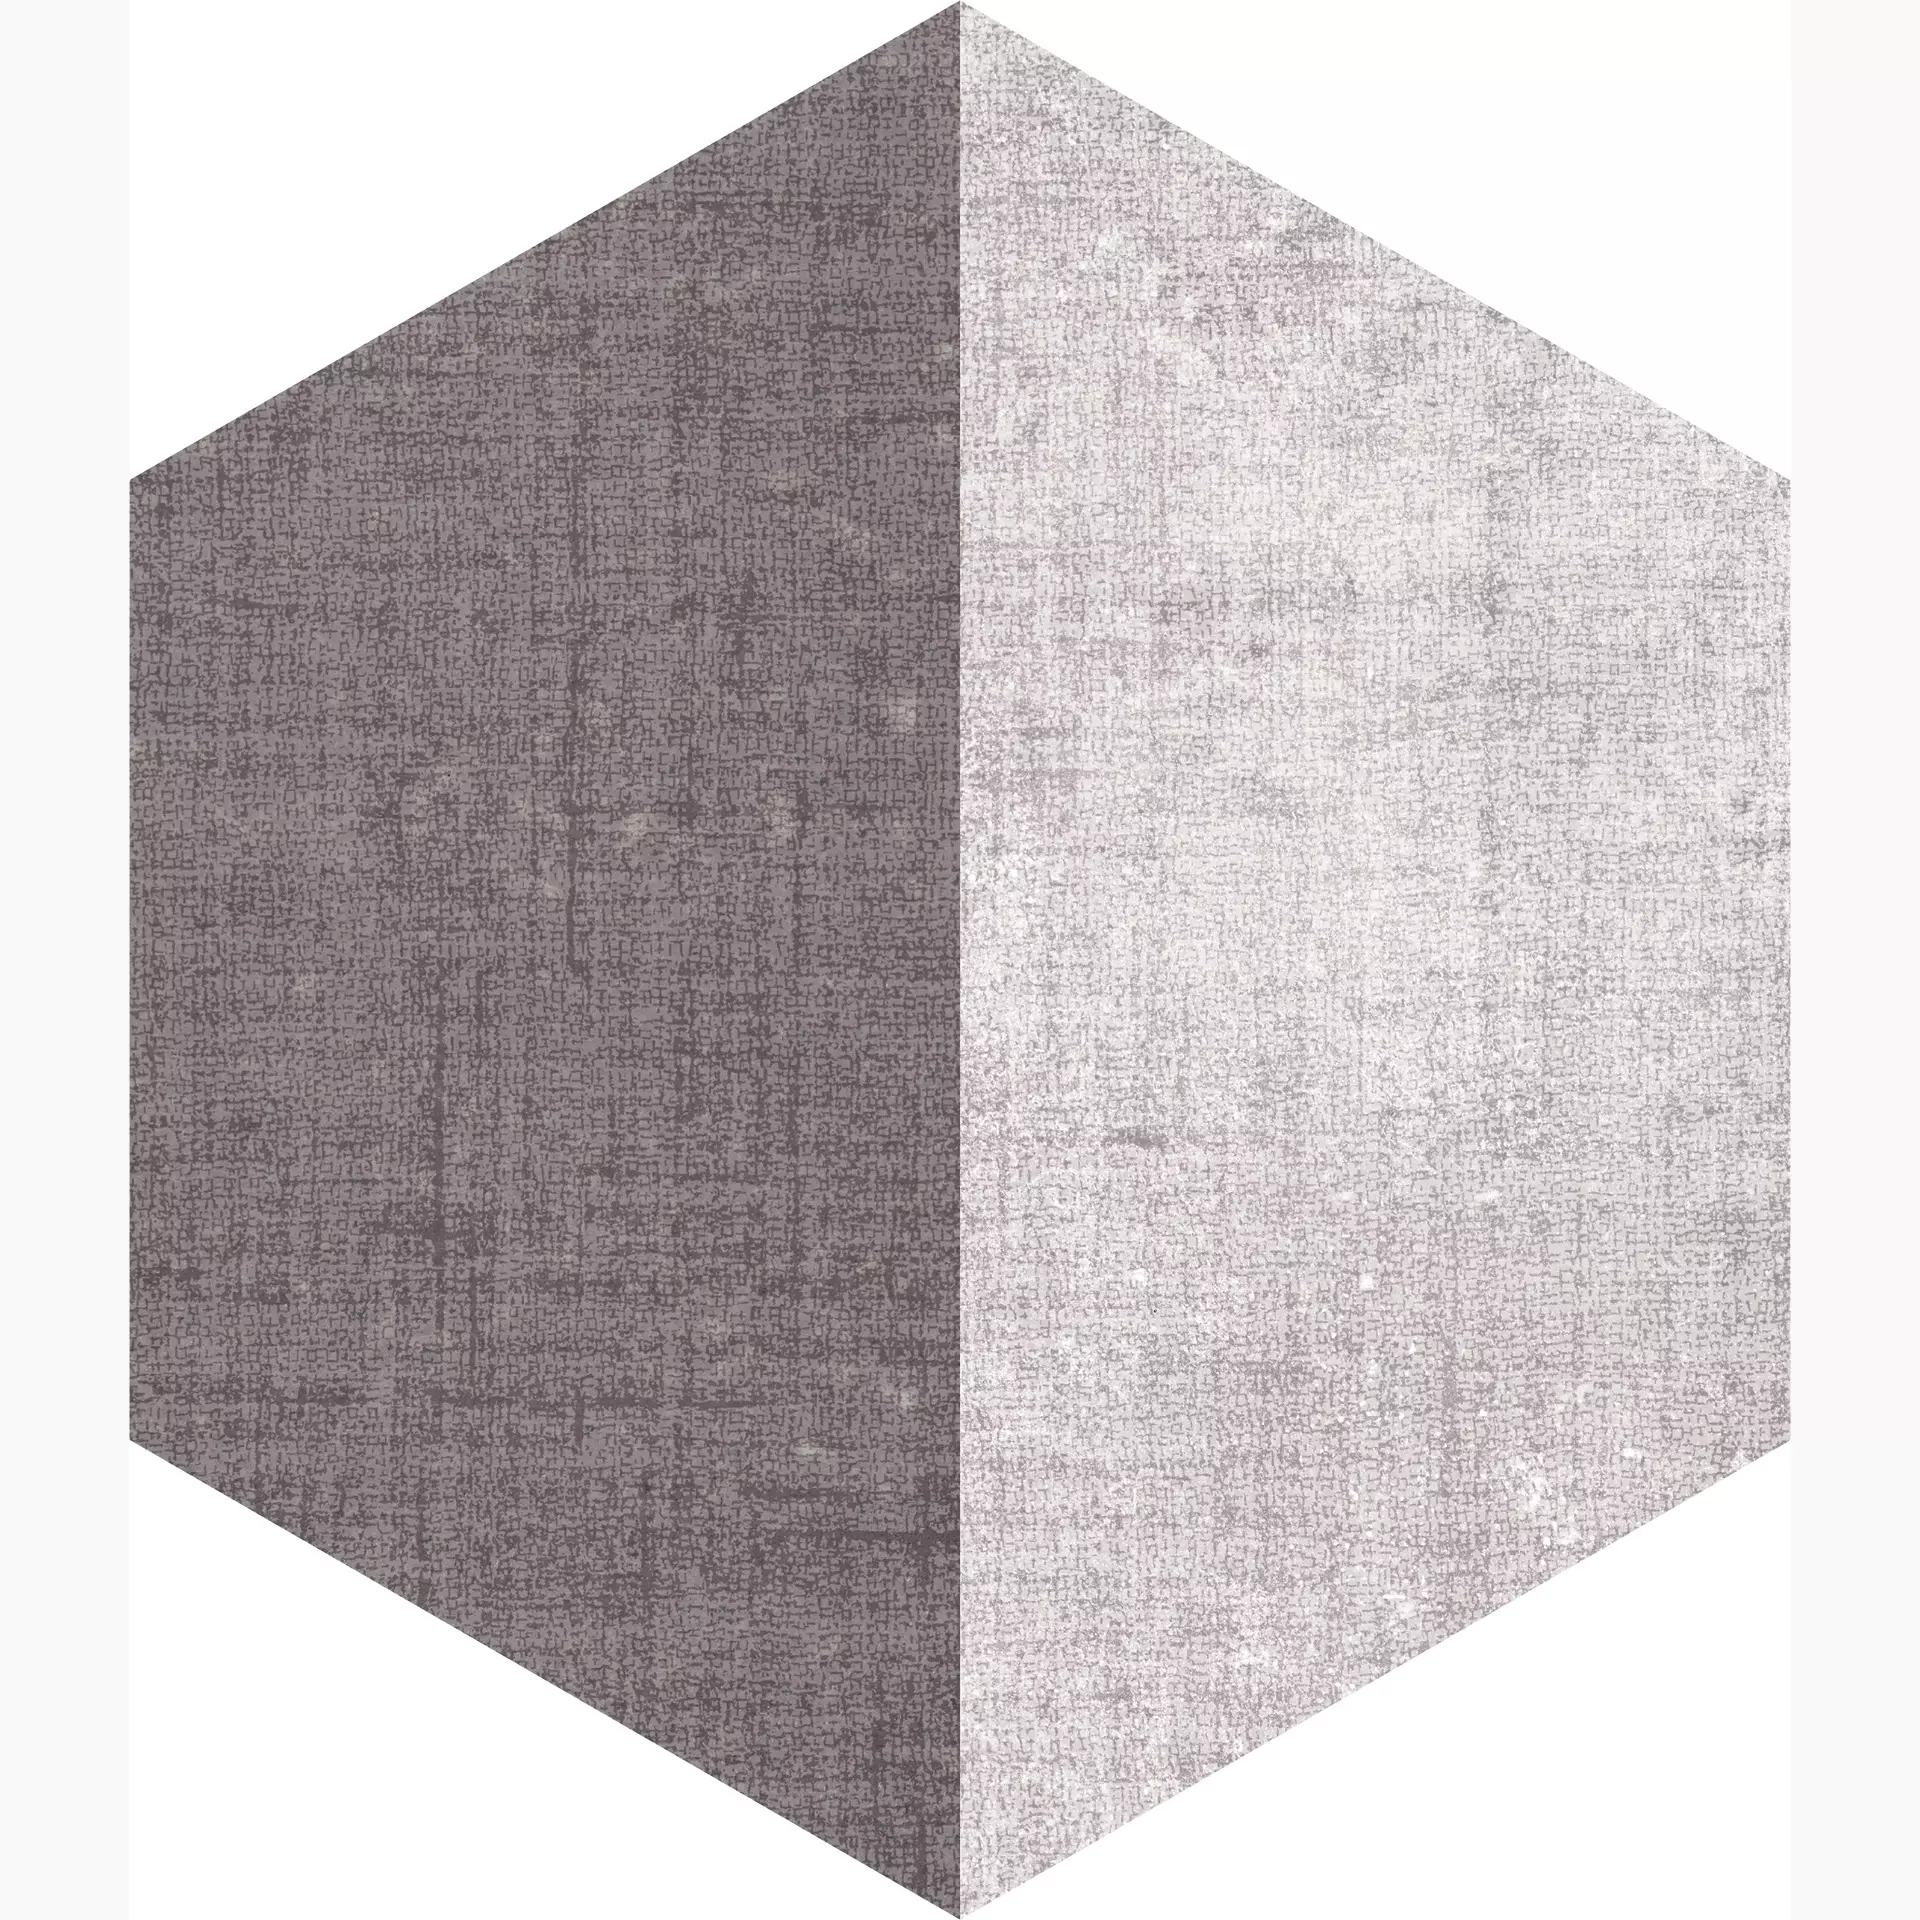 Marcacorona Textile Mix Naturale – Matt Esagona Versione F D628 21,6x25cm 9mm